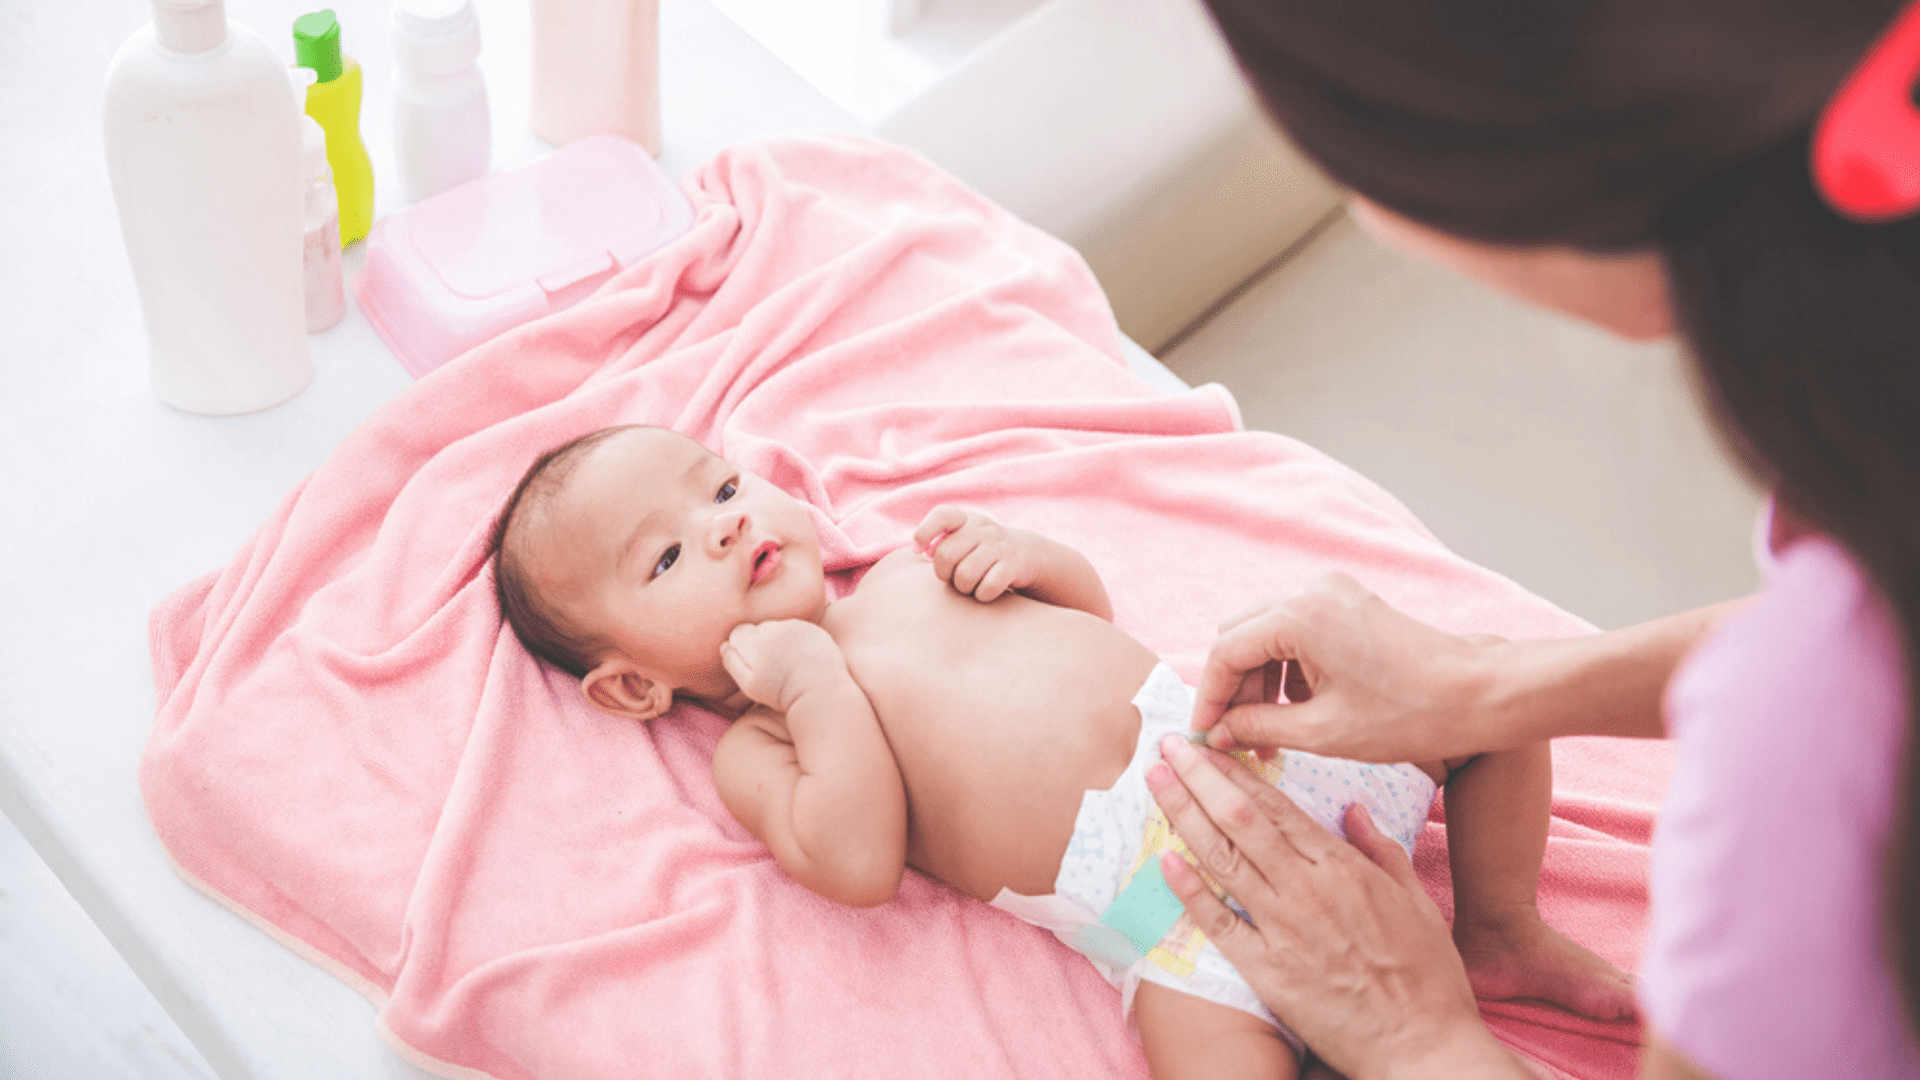 Veja a nossa seleção das melhores fraldas para recém-nascido de 2020! (Imagem: Reprodução/Shutterstock)